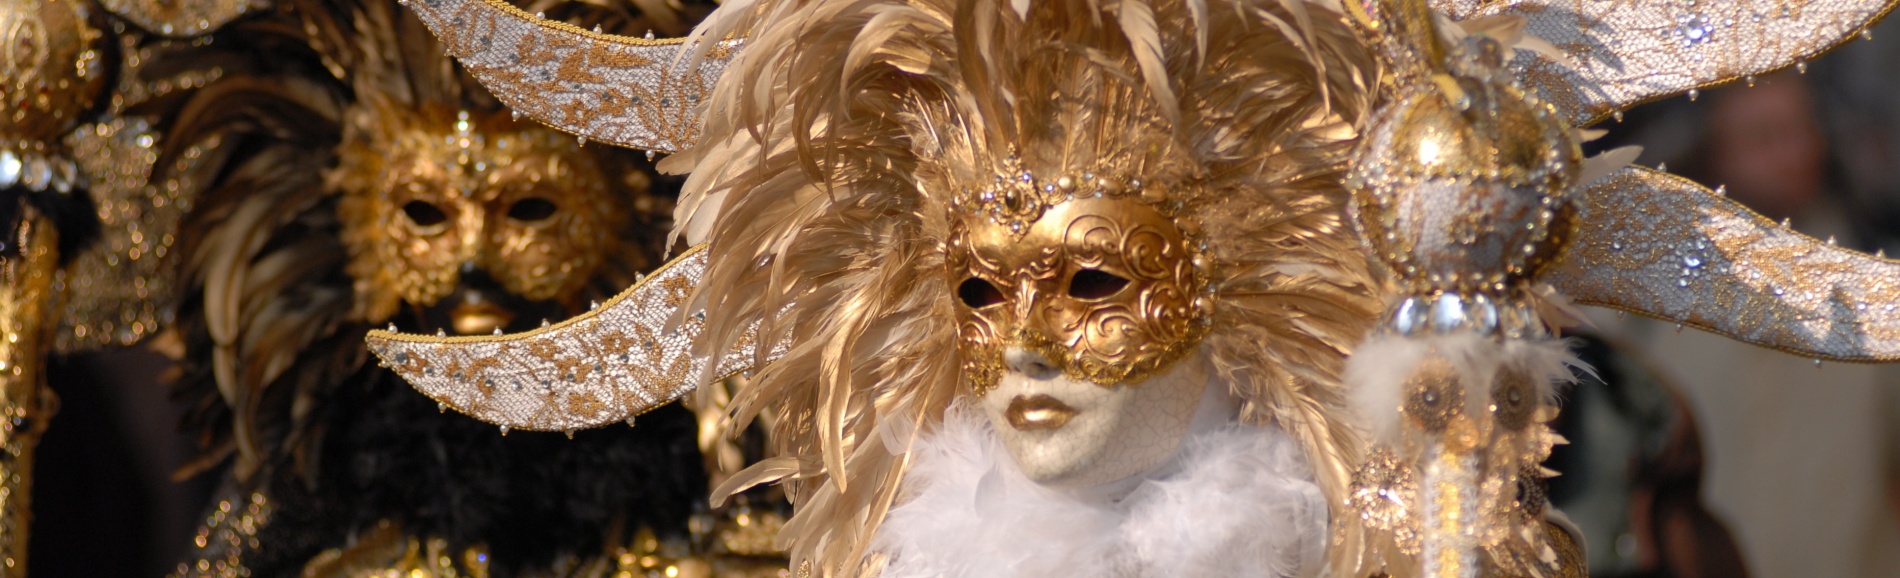 Италия, Венецианский карнавал